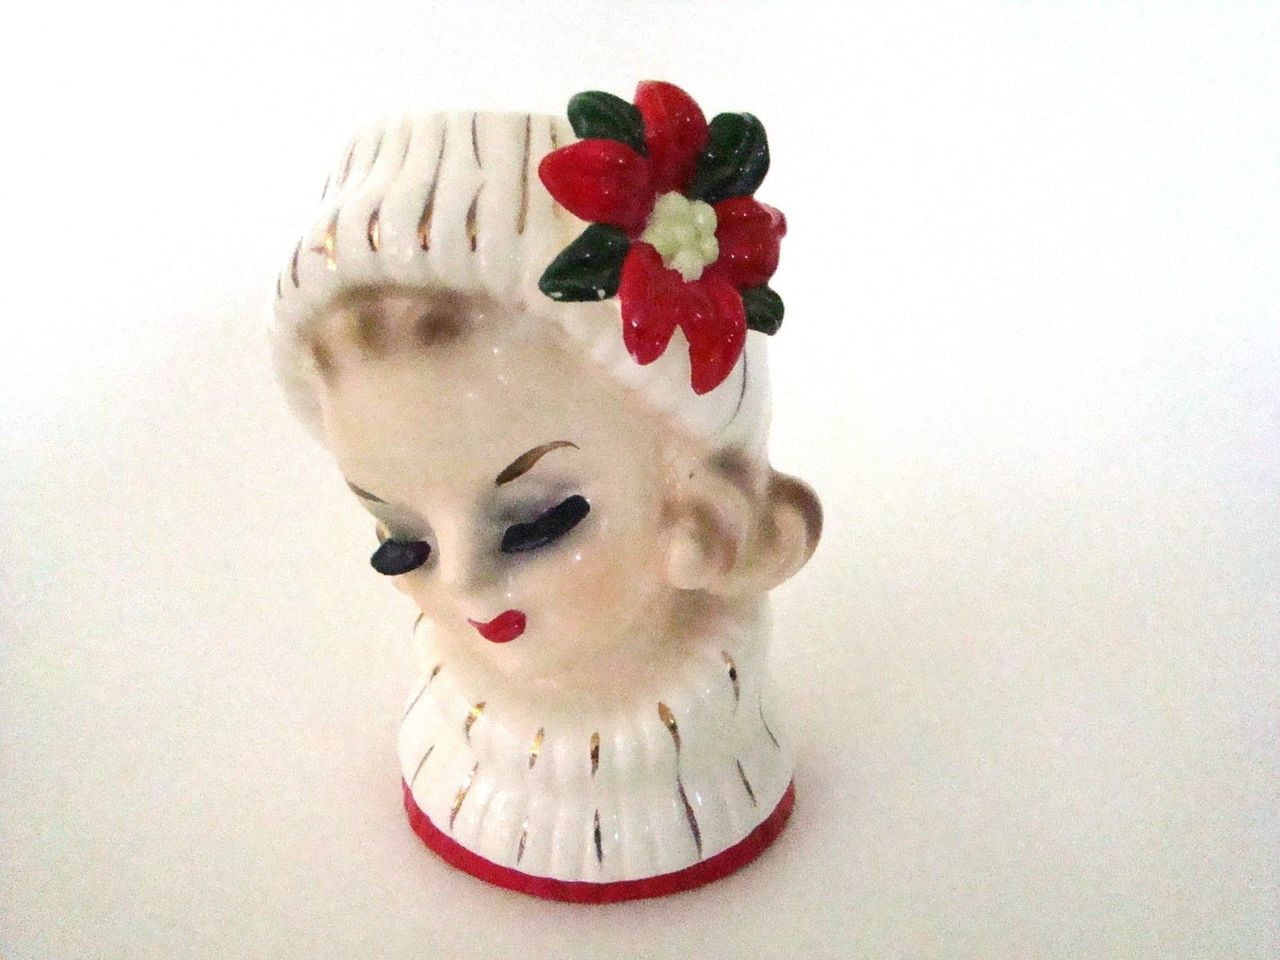 Vintage authentic Lady Head Vase Napcoware CX5409